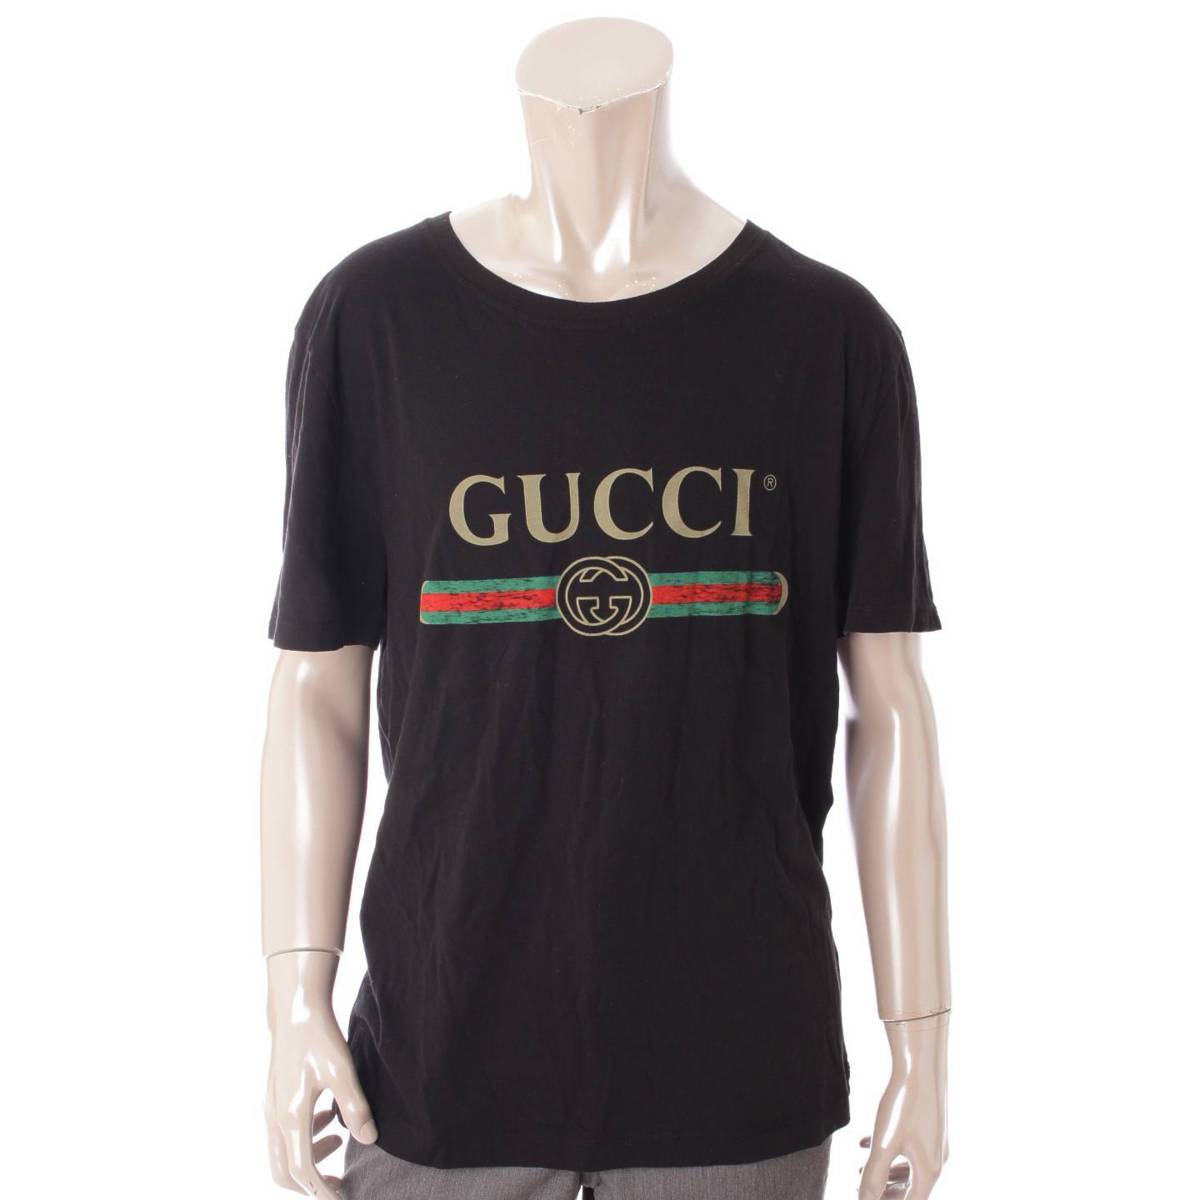 グッチ(Gucci) メンズ ヴィンテージ ロゴ プリント Tシャツ 440103